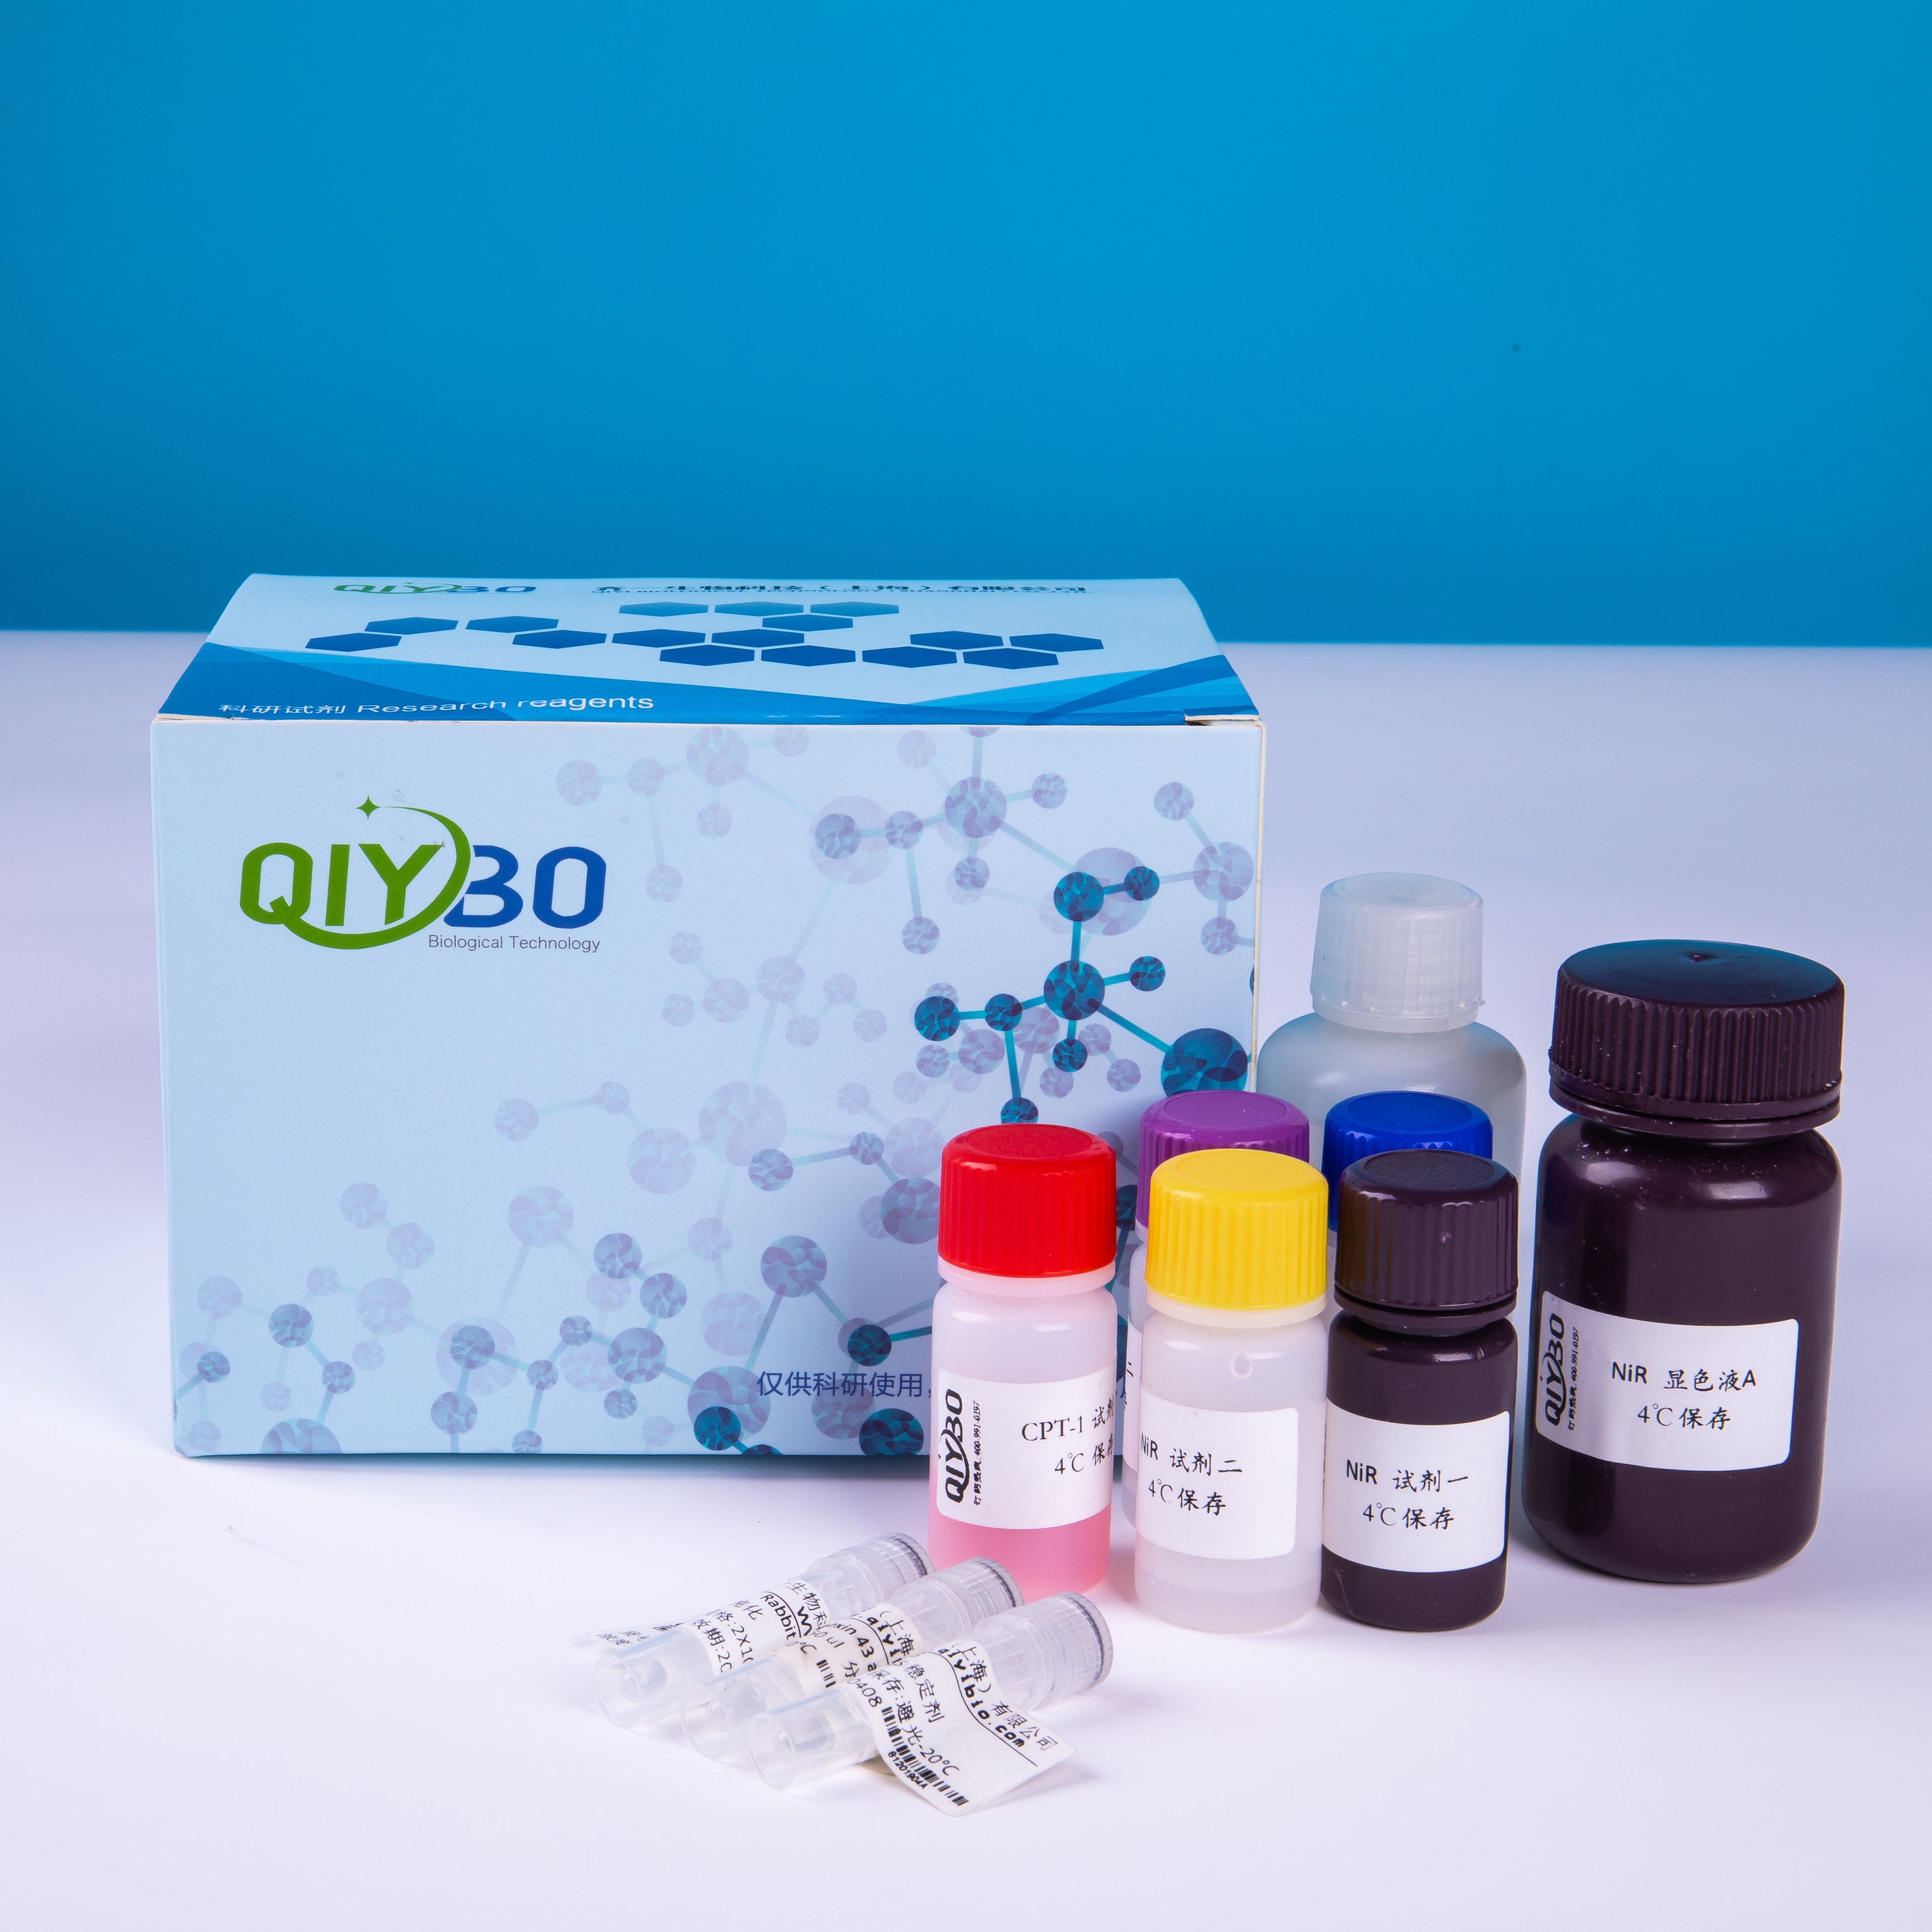 DNA片段检测试剂盒